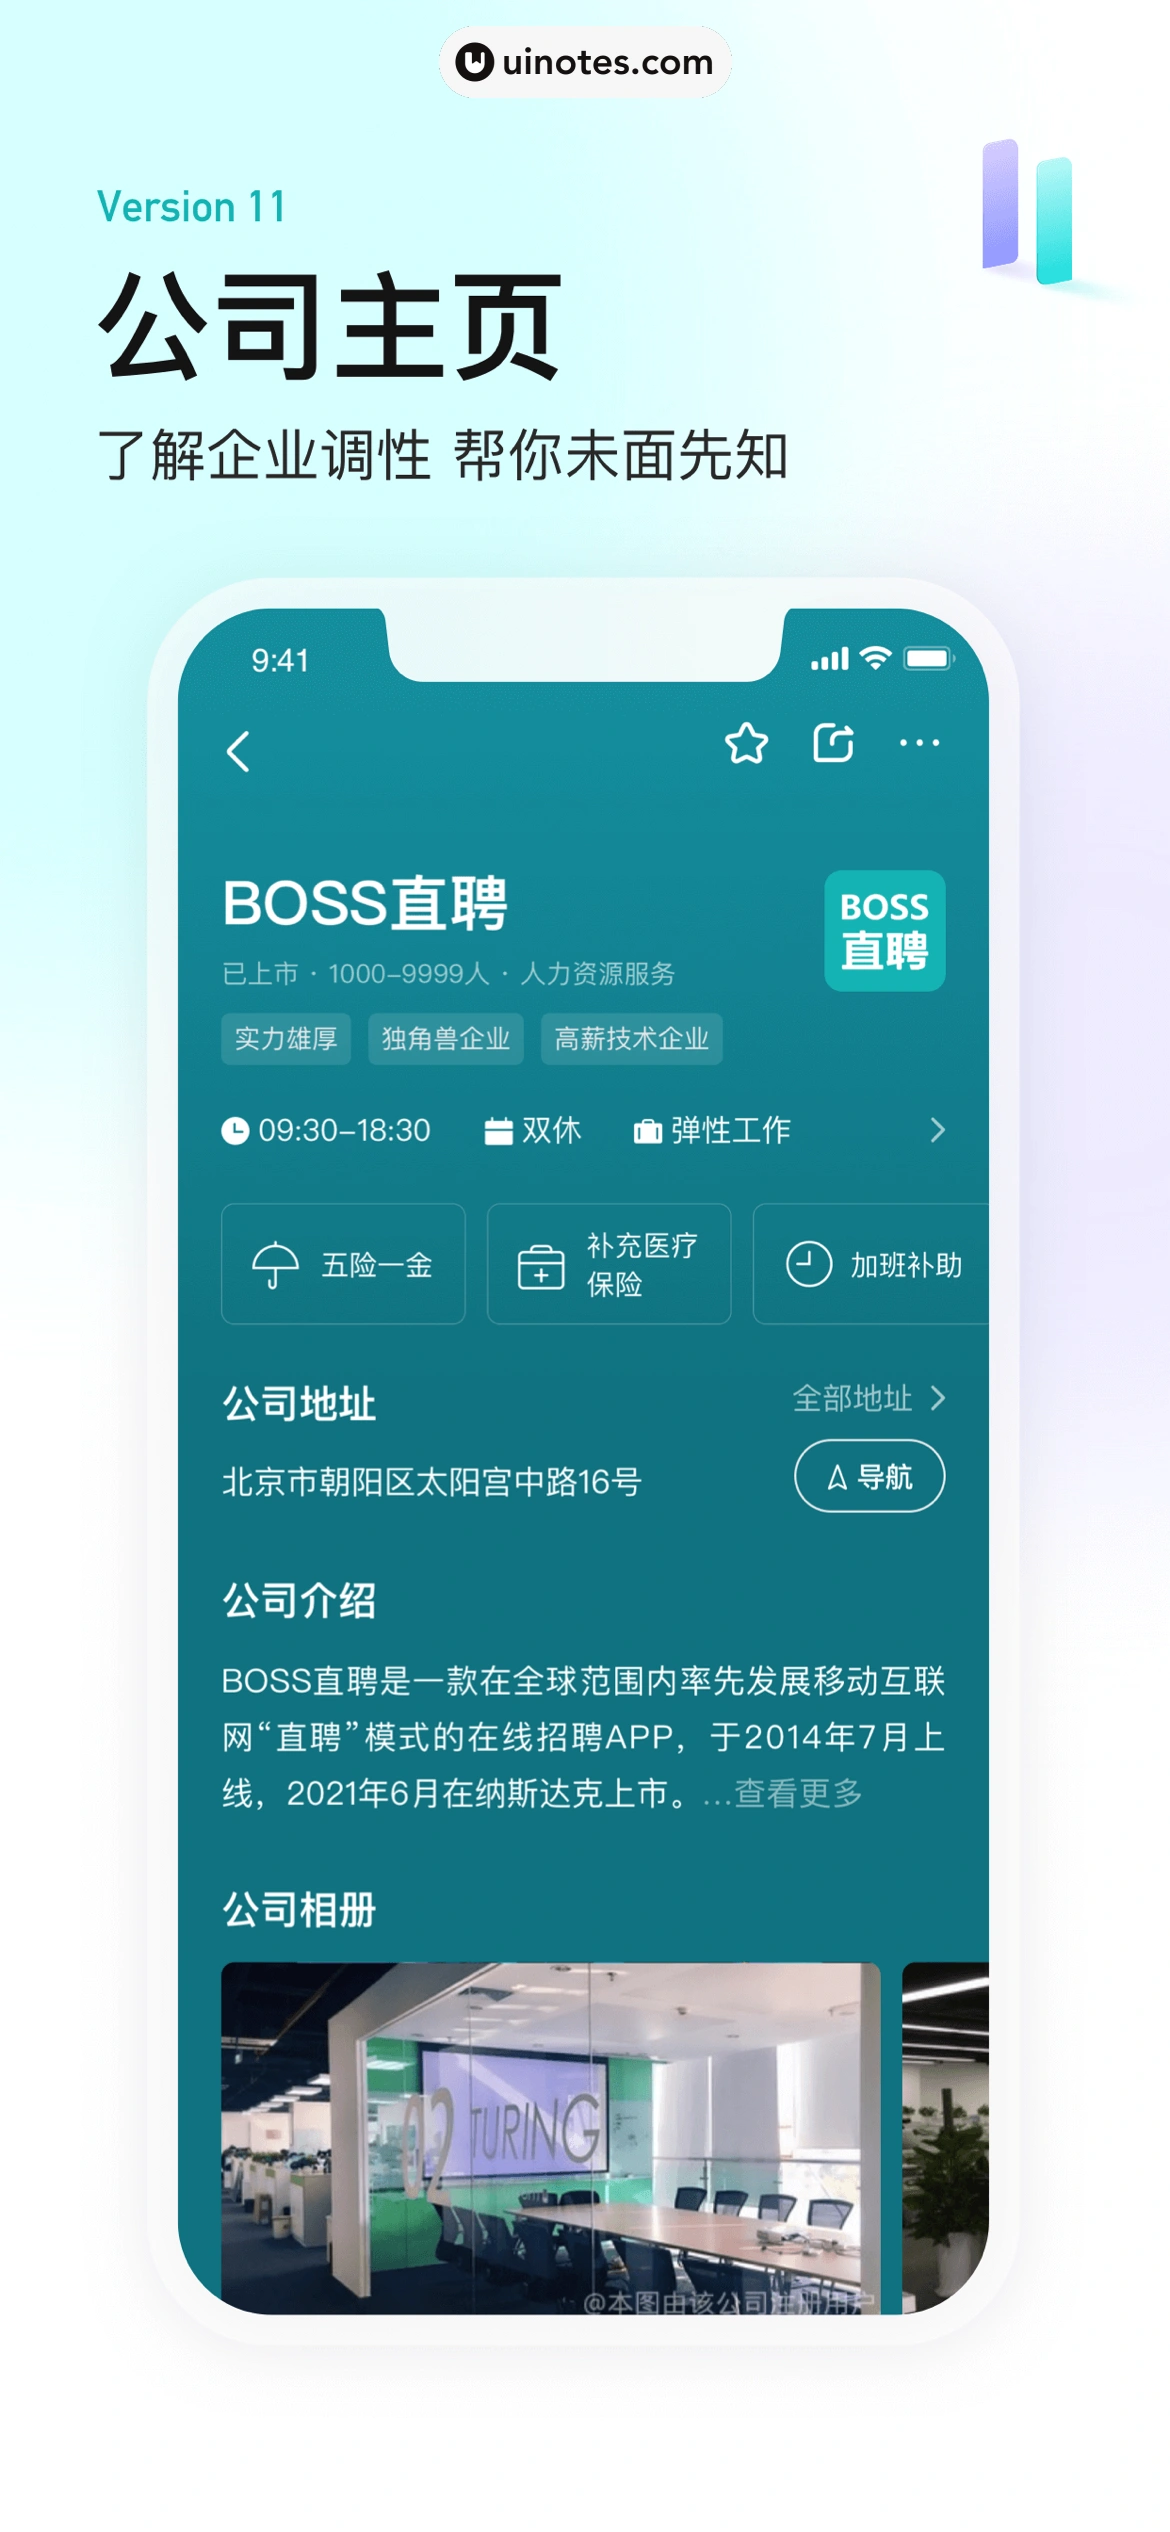 BOSS直聘 App 截图 005 - UI Notes